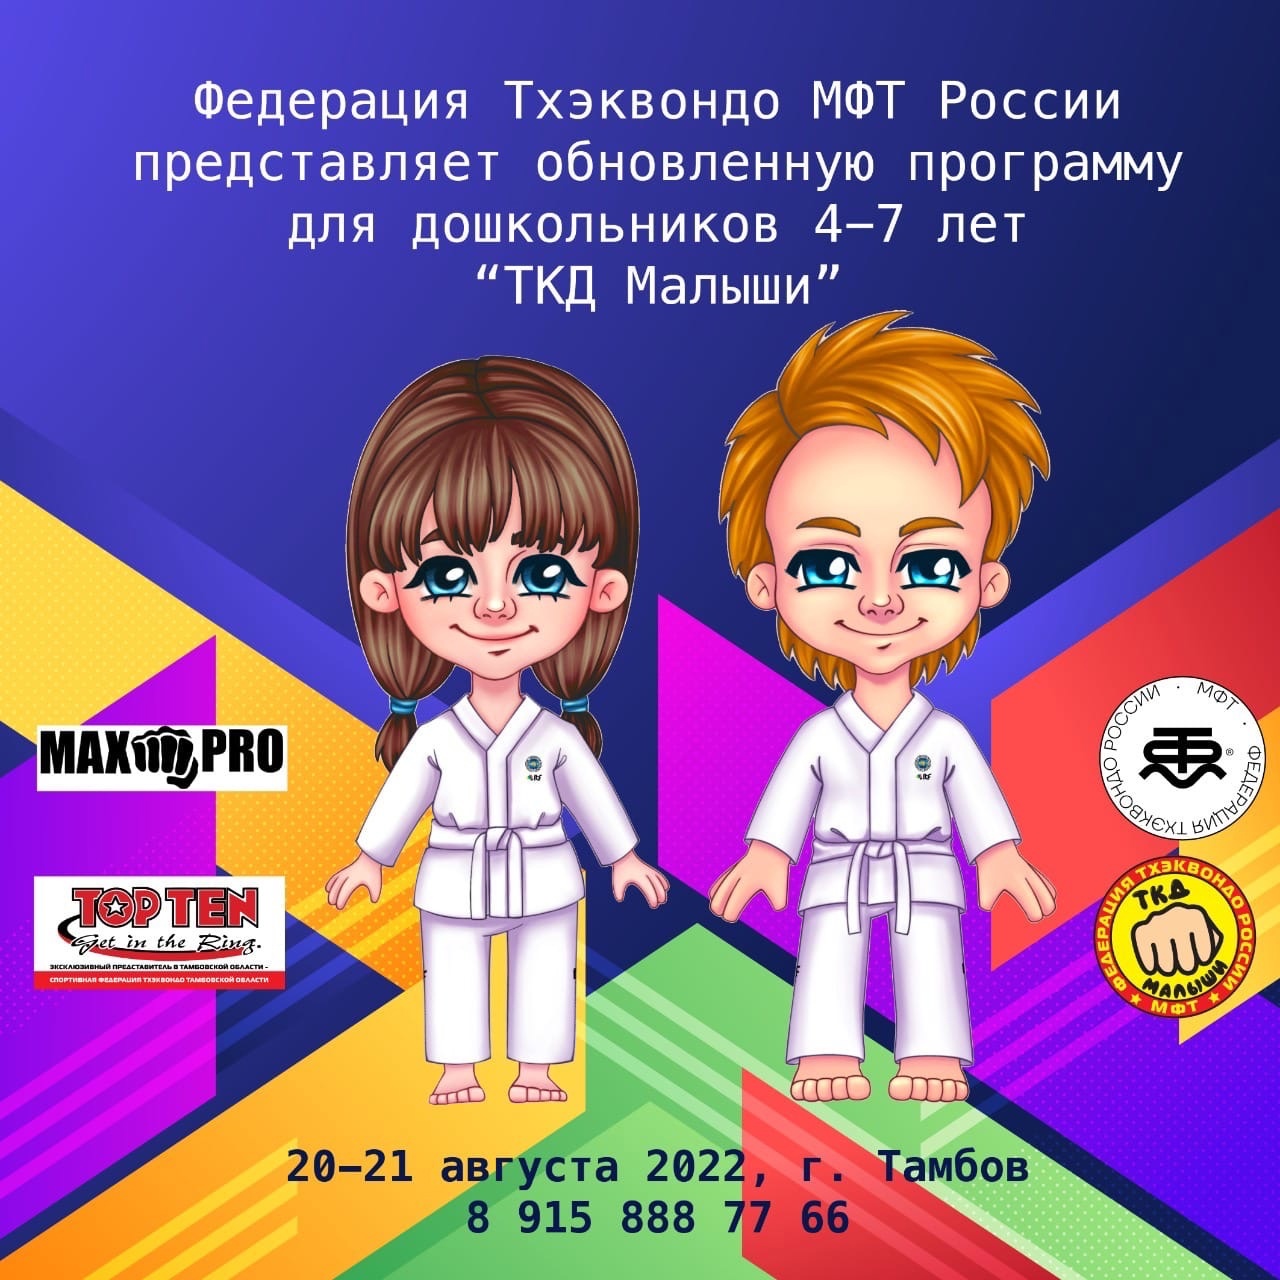 Обновлённая программа Федерации тхэквондо МФТ России по работе с дошкольниками.